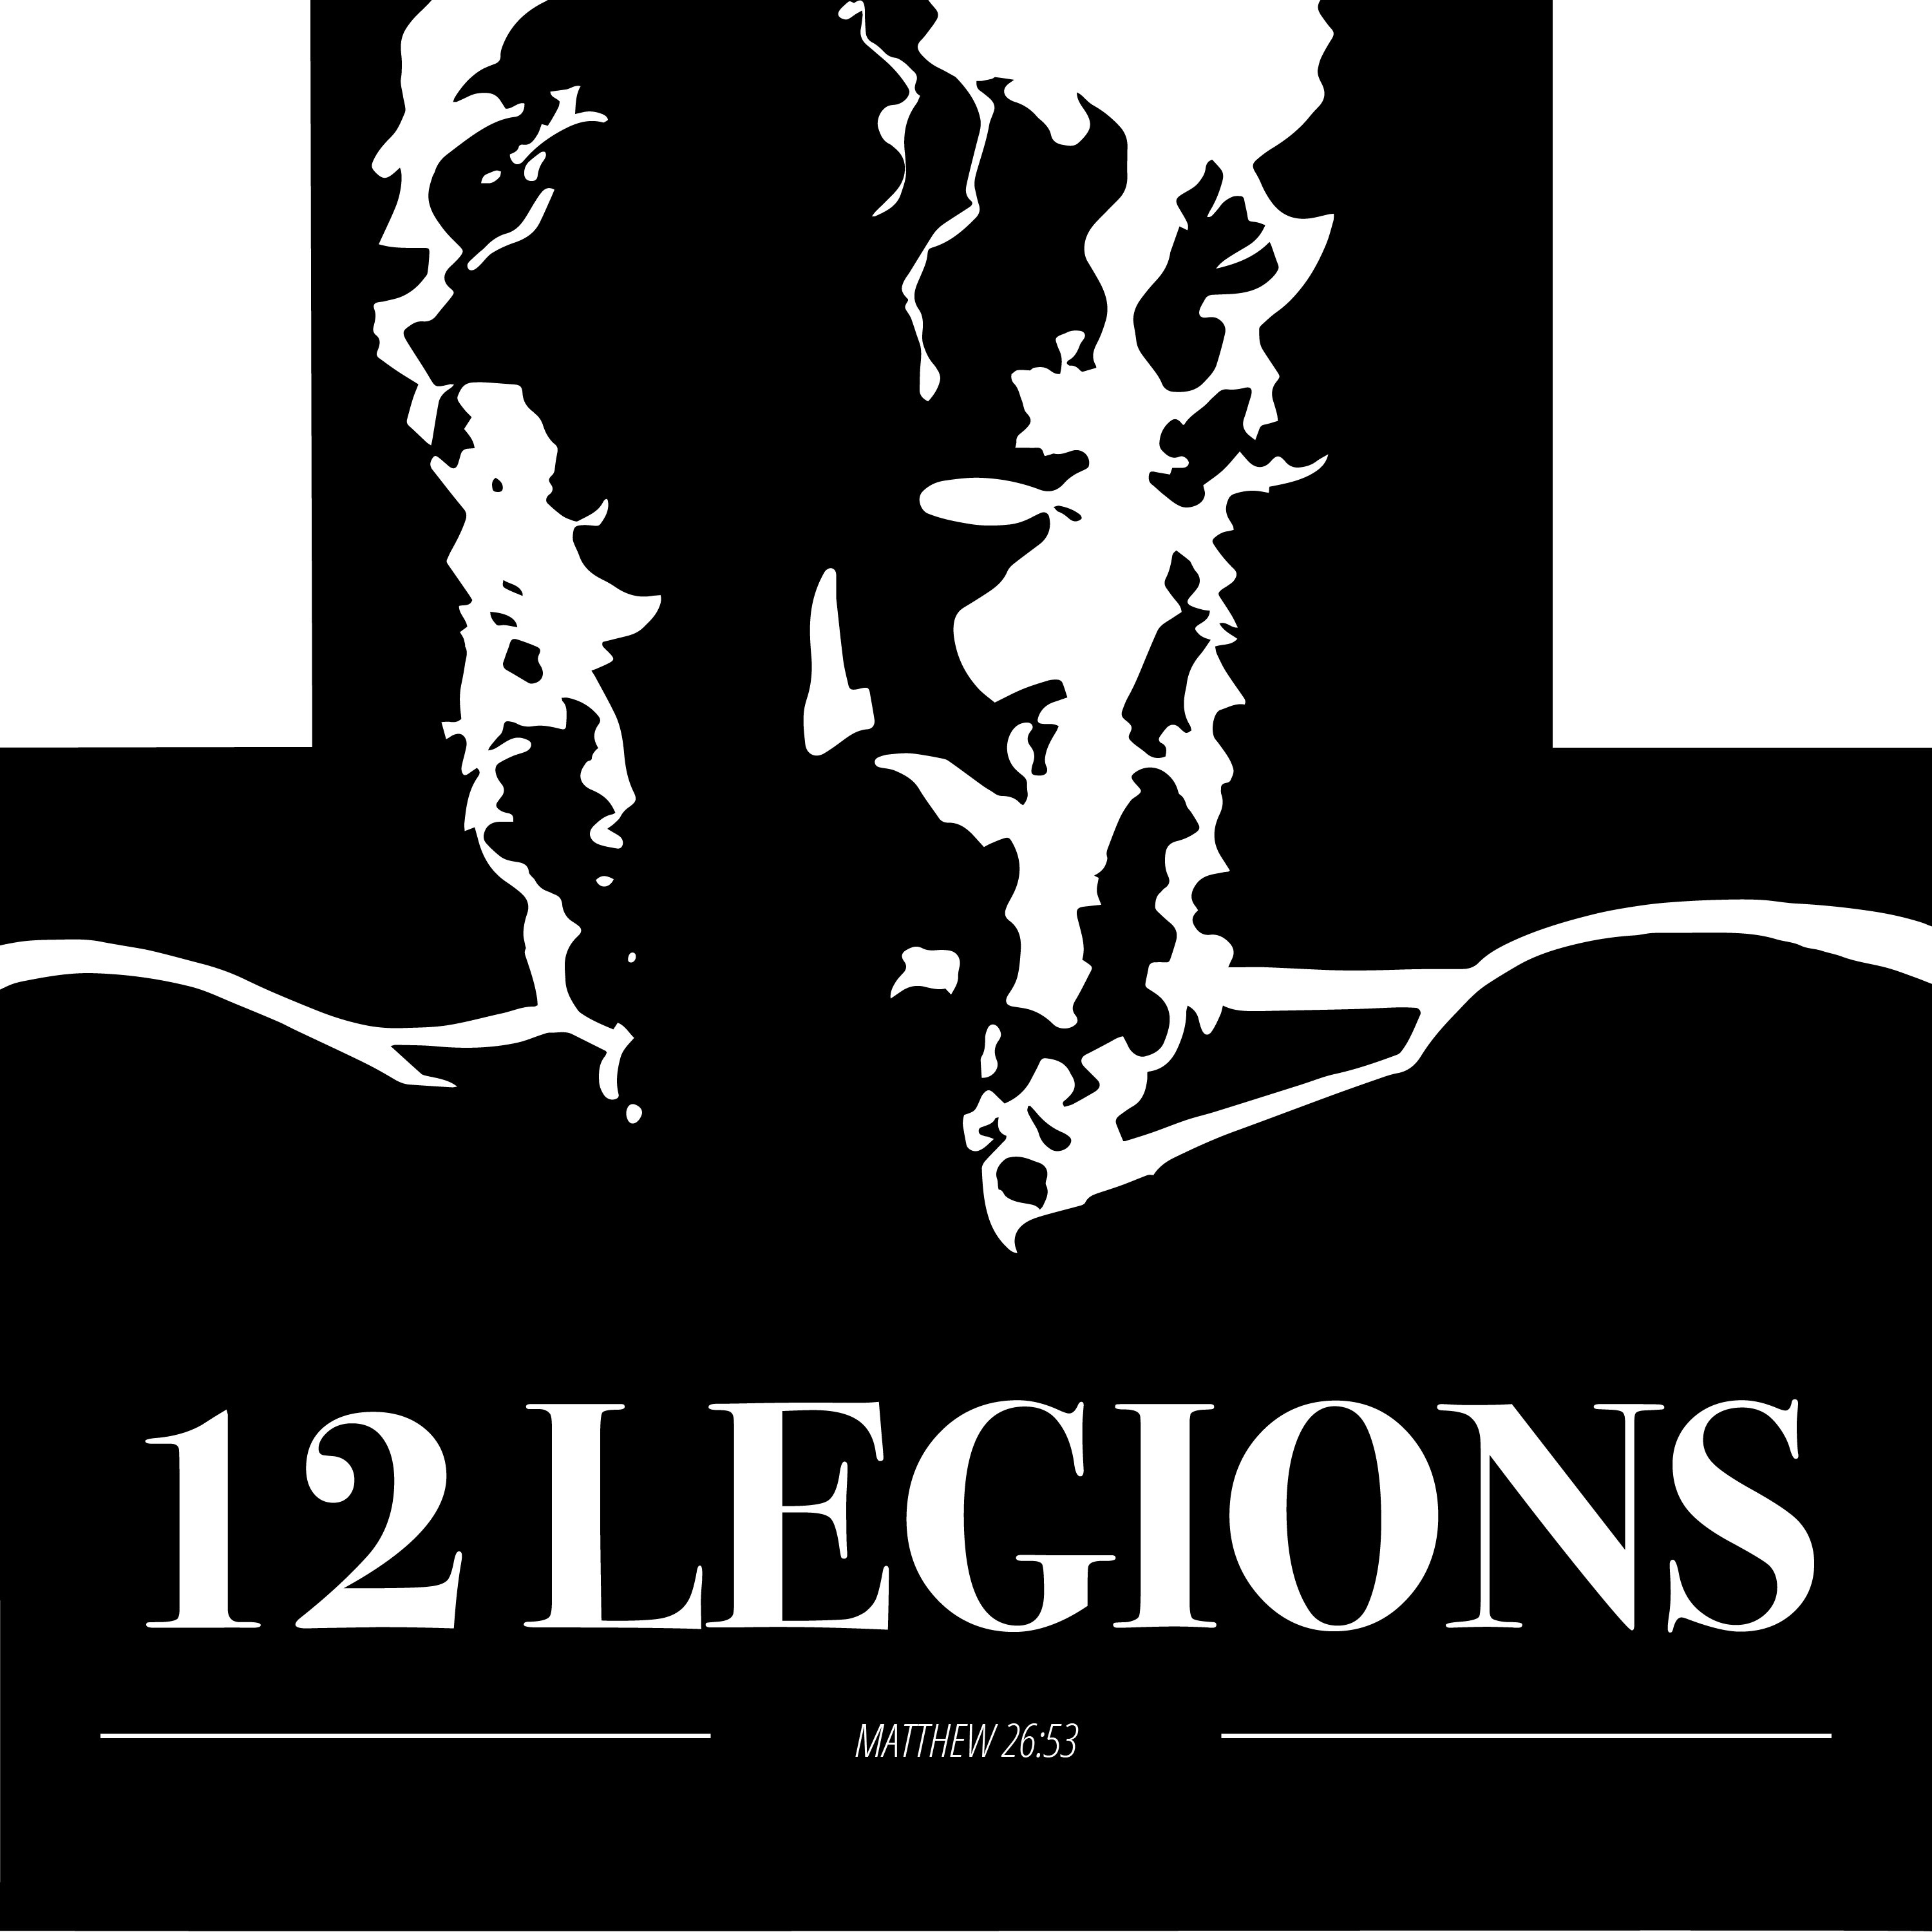 Artwork for podcast 12 Legions